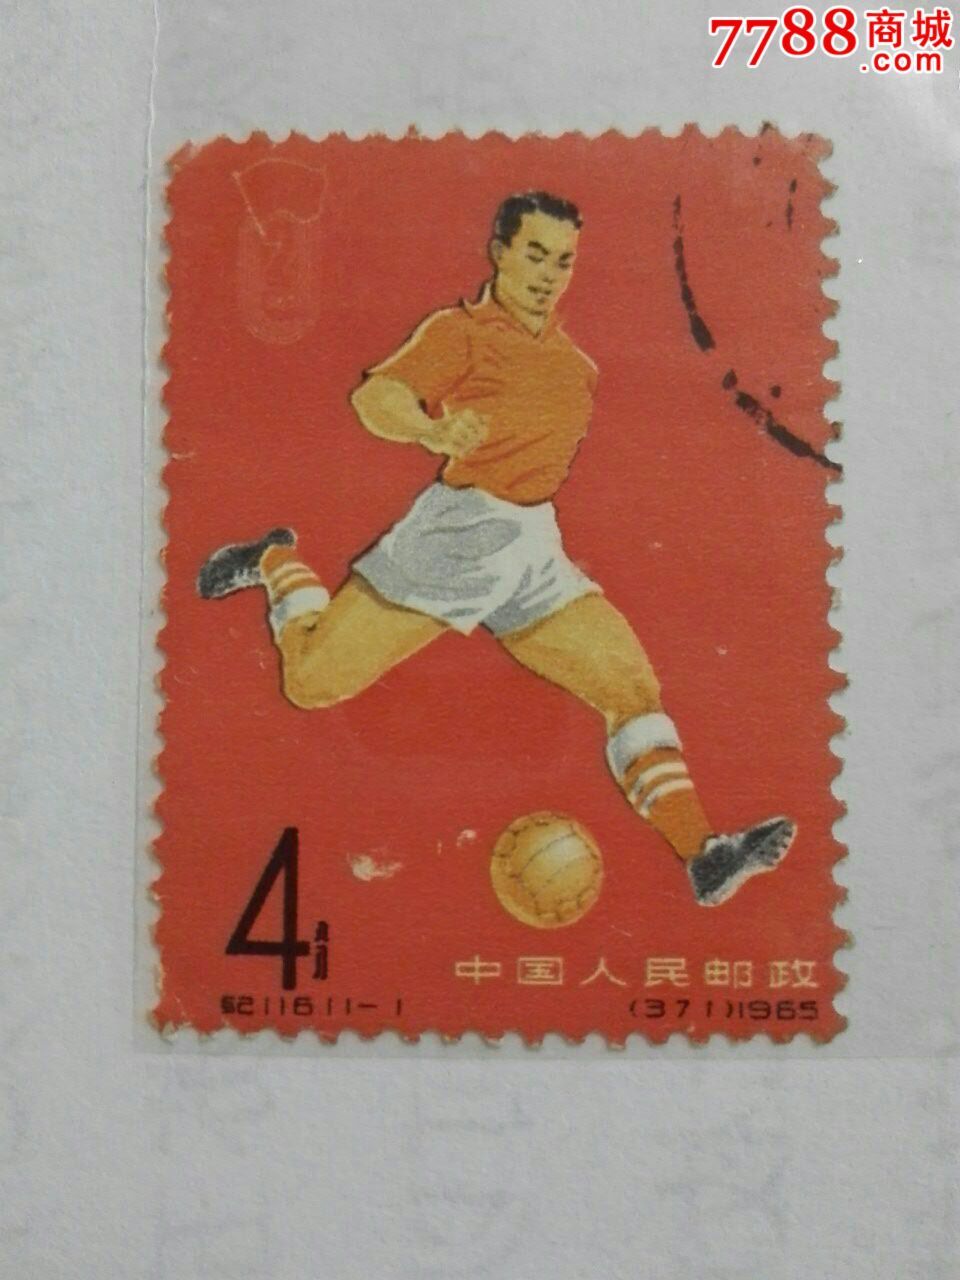 足球,新中国邮票,纪字邮票,六十年代(20世纪)